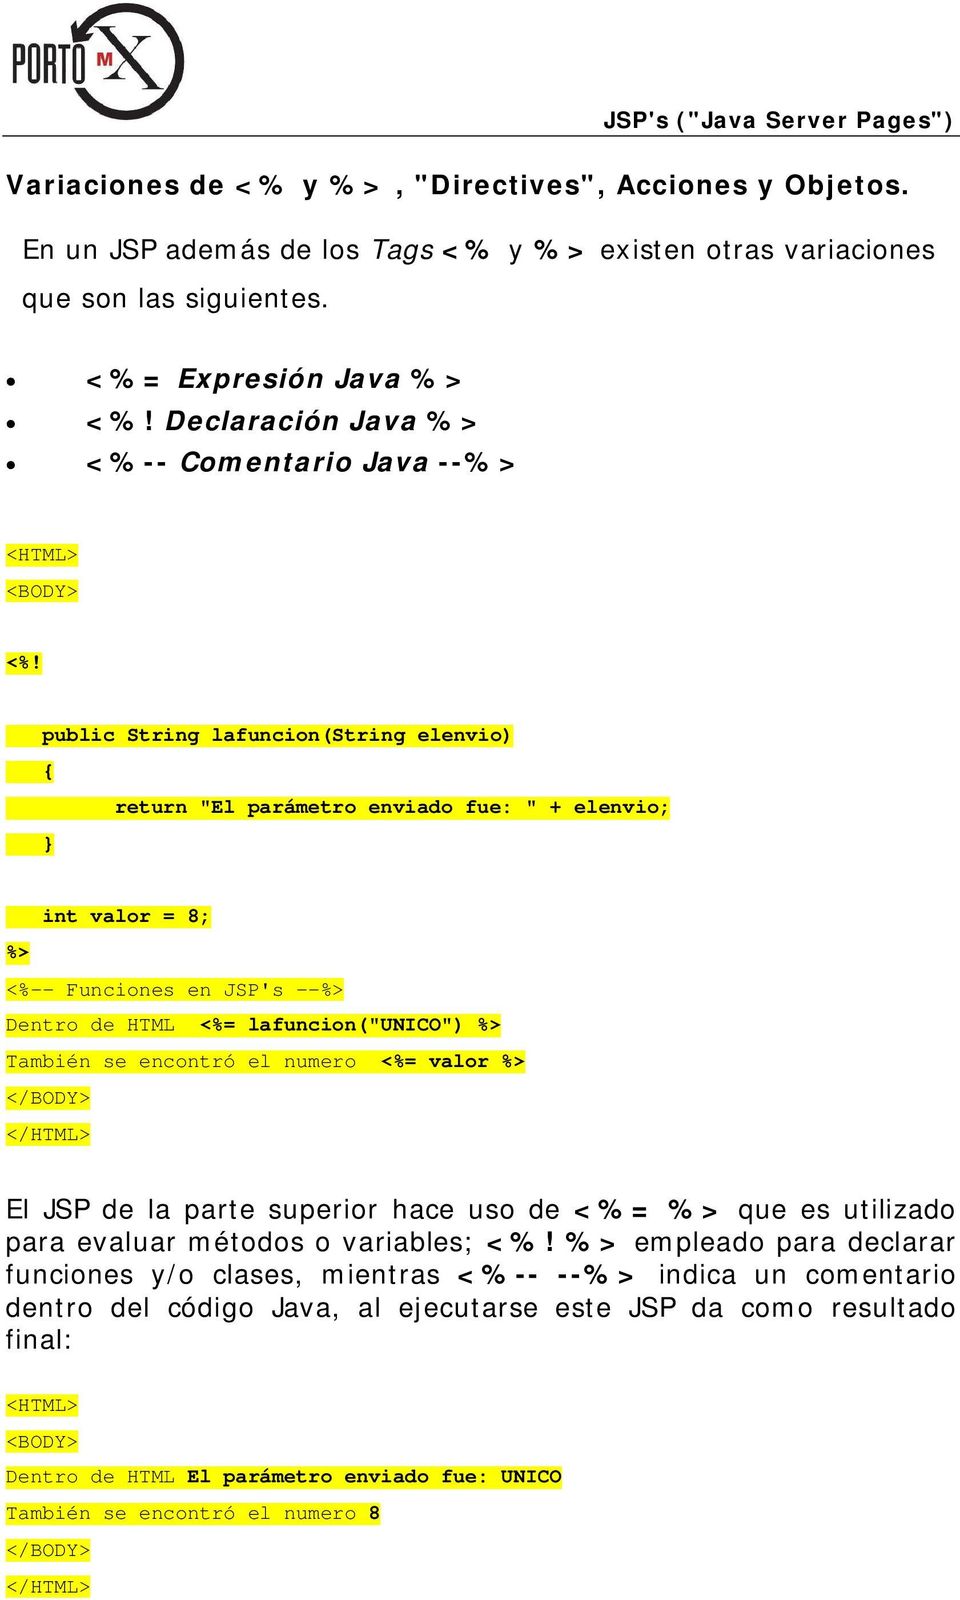 public String lafuncion(string elenvio) { return "El parámetro enviado fue: " + elenvio; } int valor = 8; %> <%-- Funciones en JSP's --%> Dentro de HTML <%= lafuncion("unico") %> También se encontró